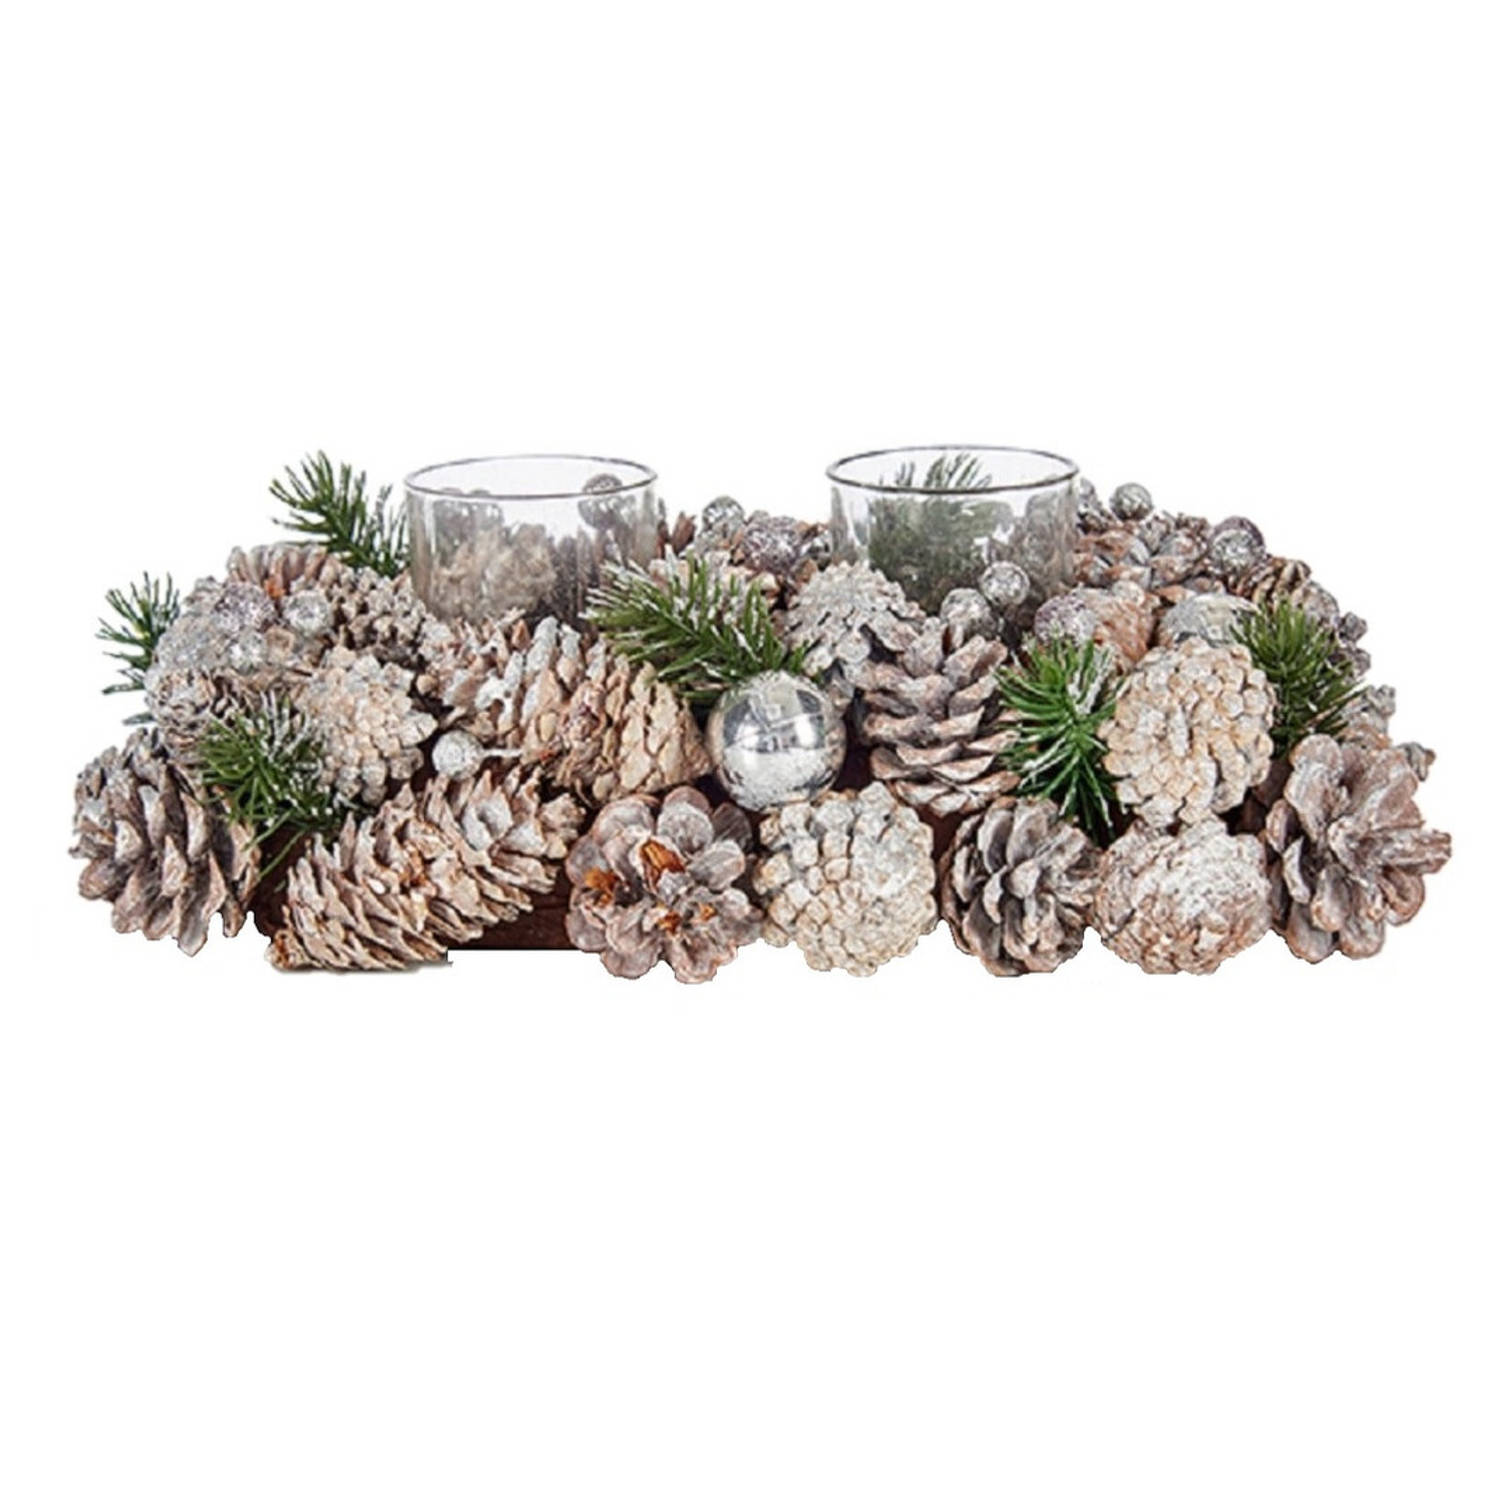 Kerst thema kaarsenhouder ornament silver/green nature 29 x 18 x 11 cm - Voor 2x kaarsjes - Tafel decoratie